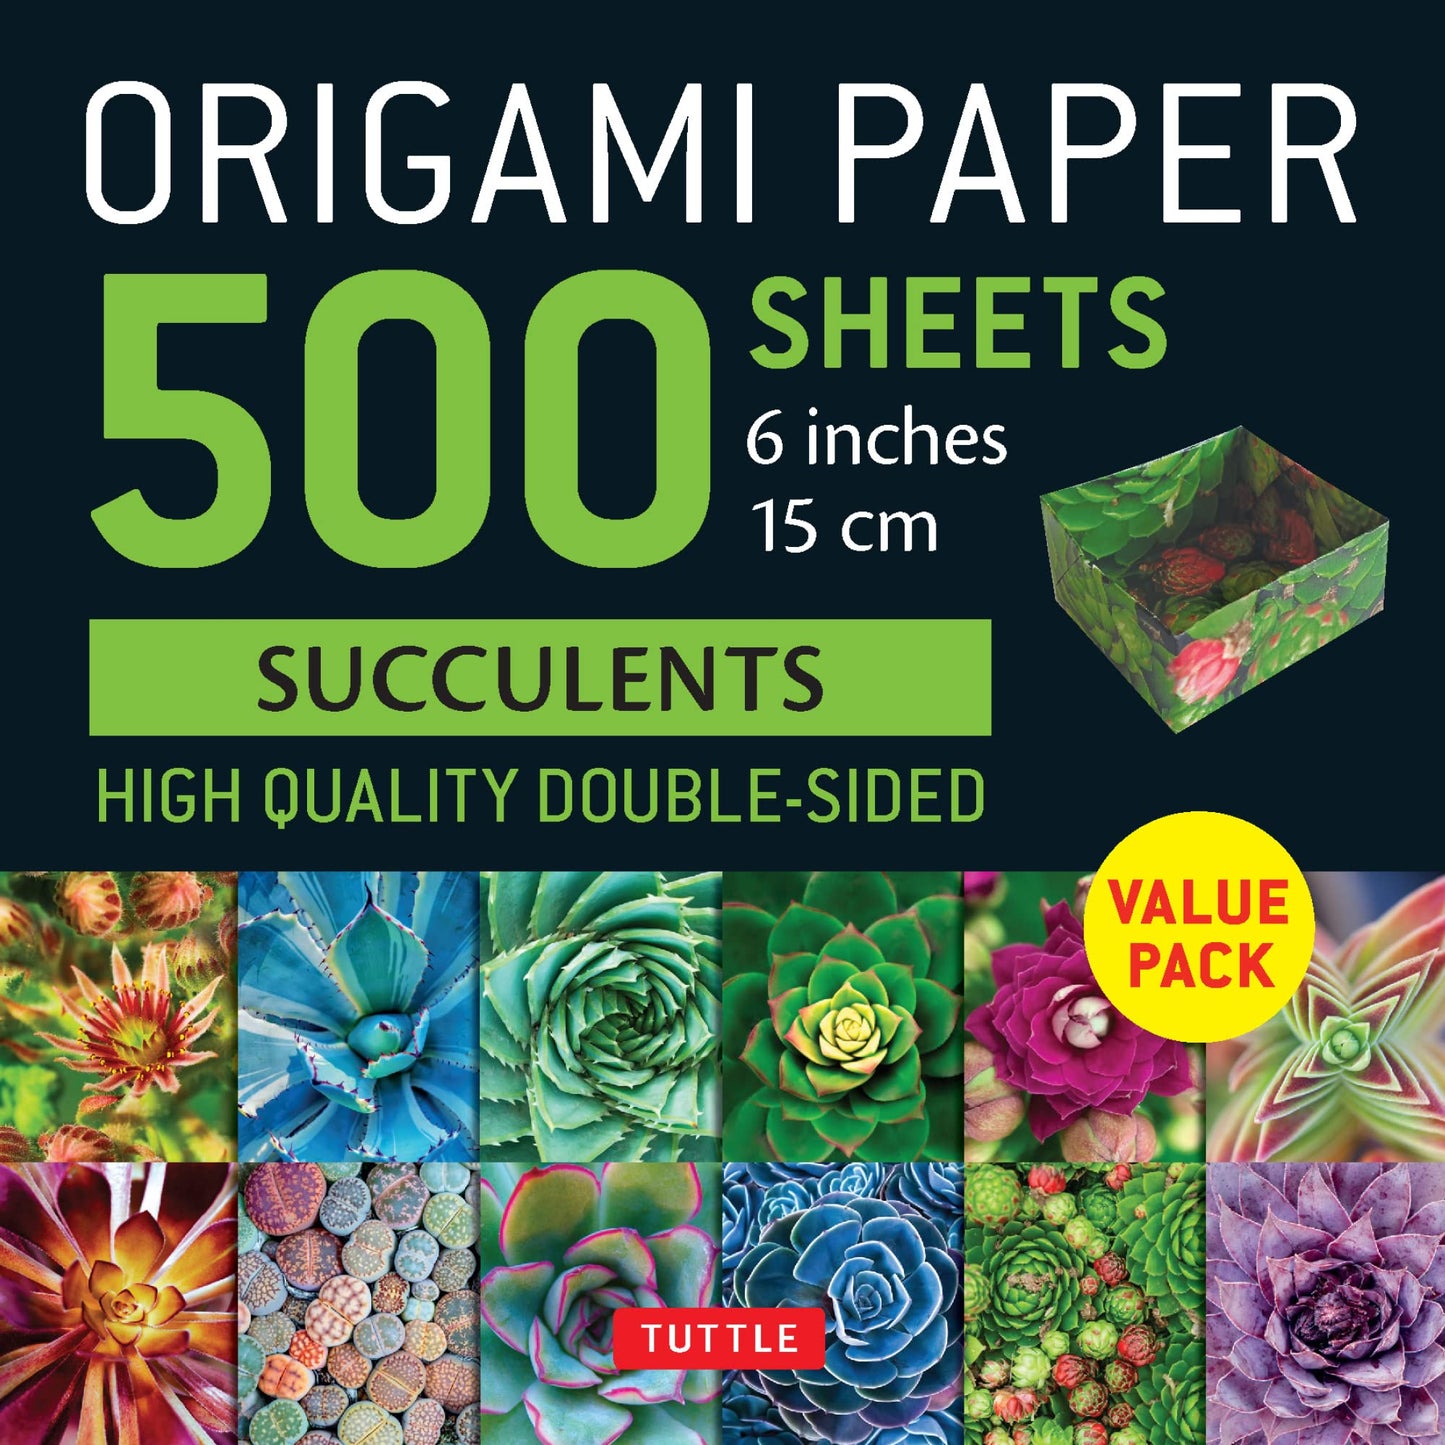 Origami Paper 500 Sheets Succulents